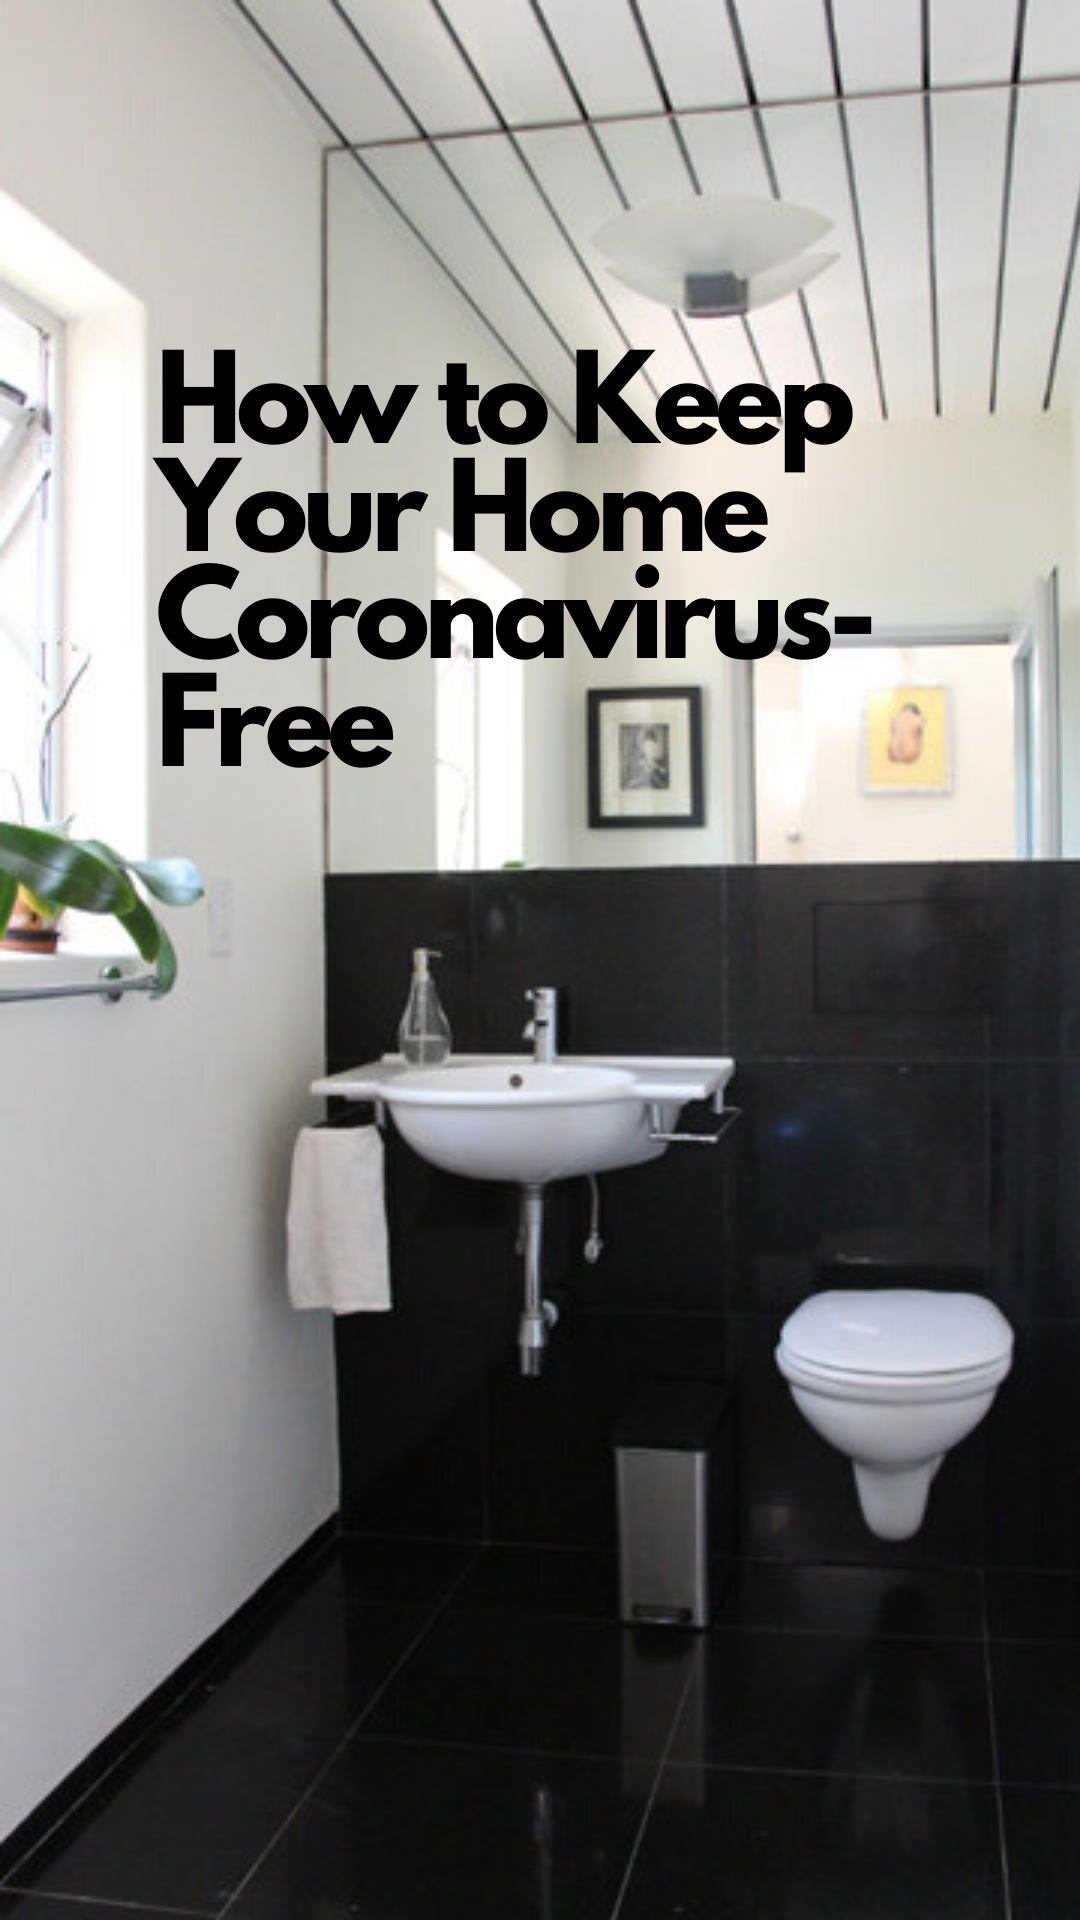 How to Keep Your Home Coronavirus-Free